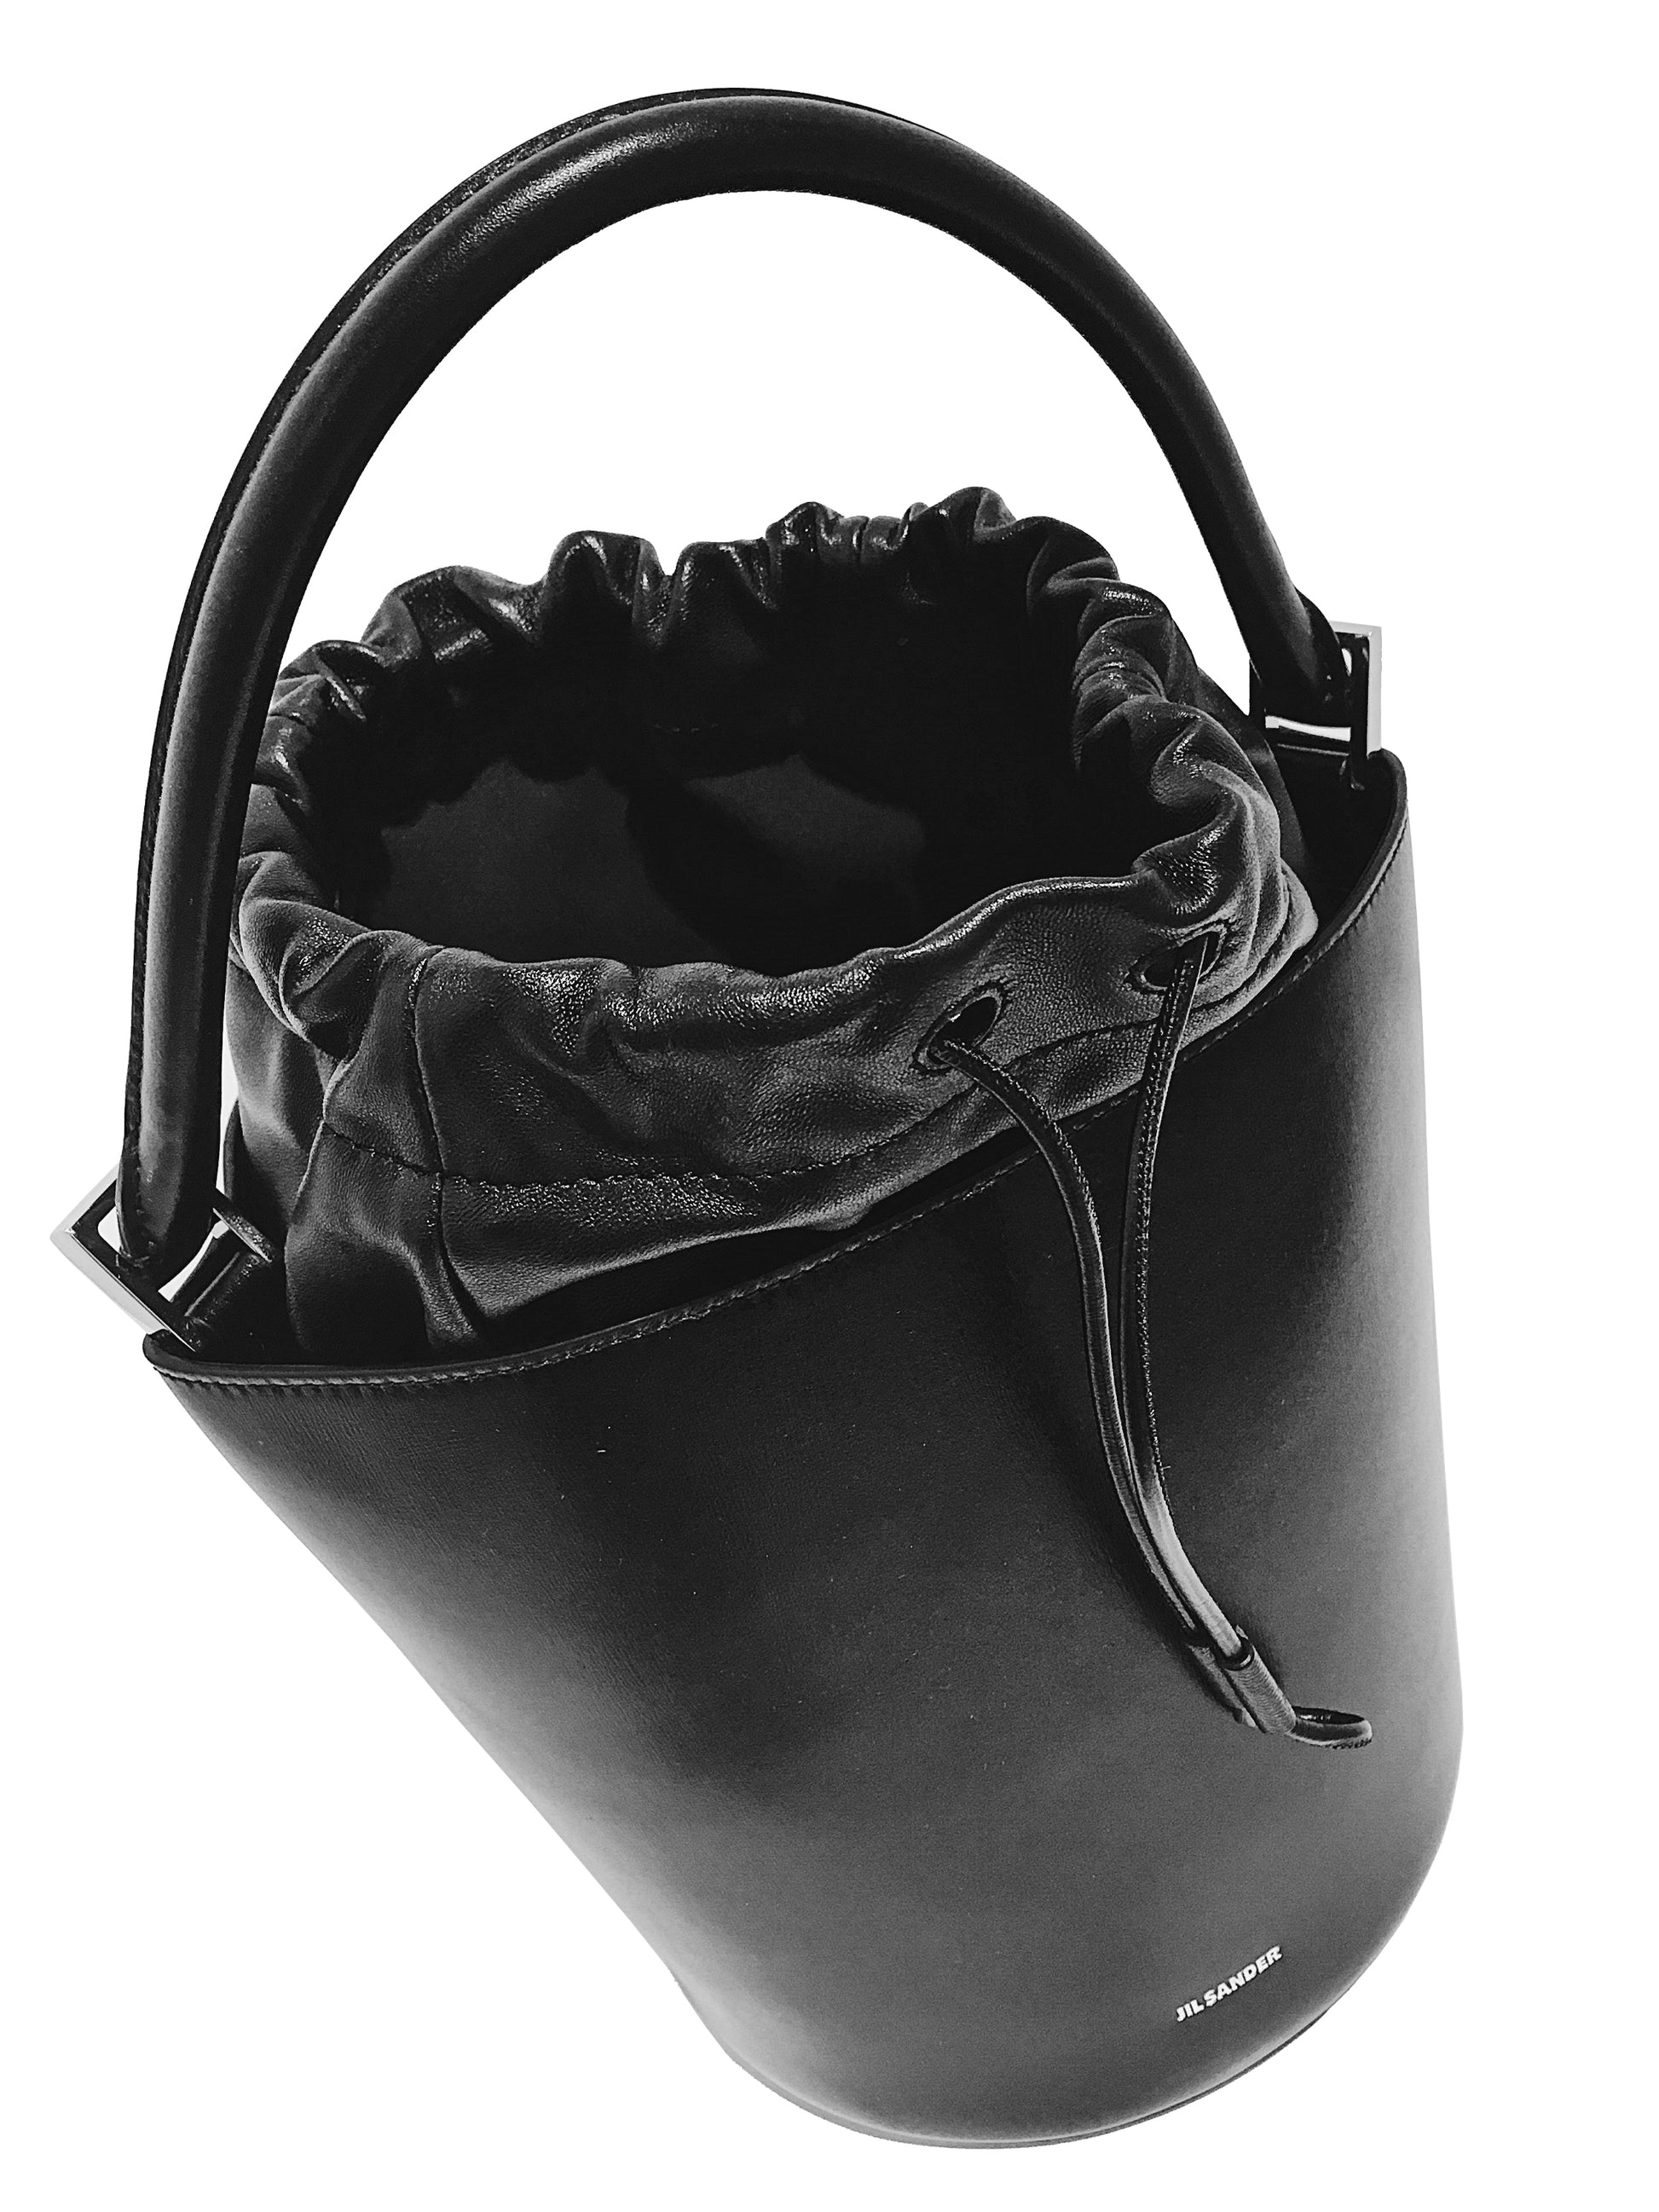 Dieses einzigartige Taschen-Design von JIL SANDER ist ein absoluter Hingucker. Das hochwertige Kalbsleder in schwarz lässt sich vielseitig kombinieren und passt zu jedem Look. Für den Designer typisch gibt es viele Details, sowie zwei verschiedene Tragemöglichkeiten der Tasche. 